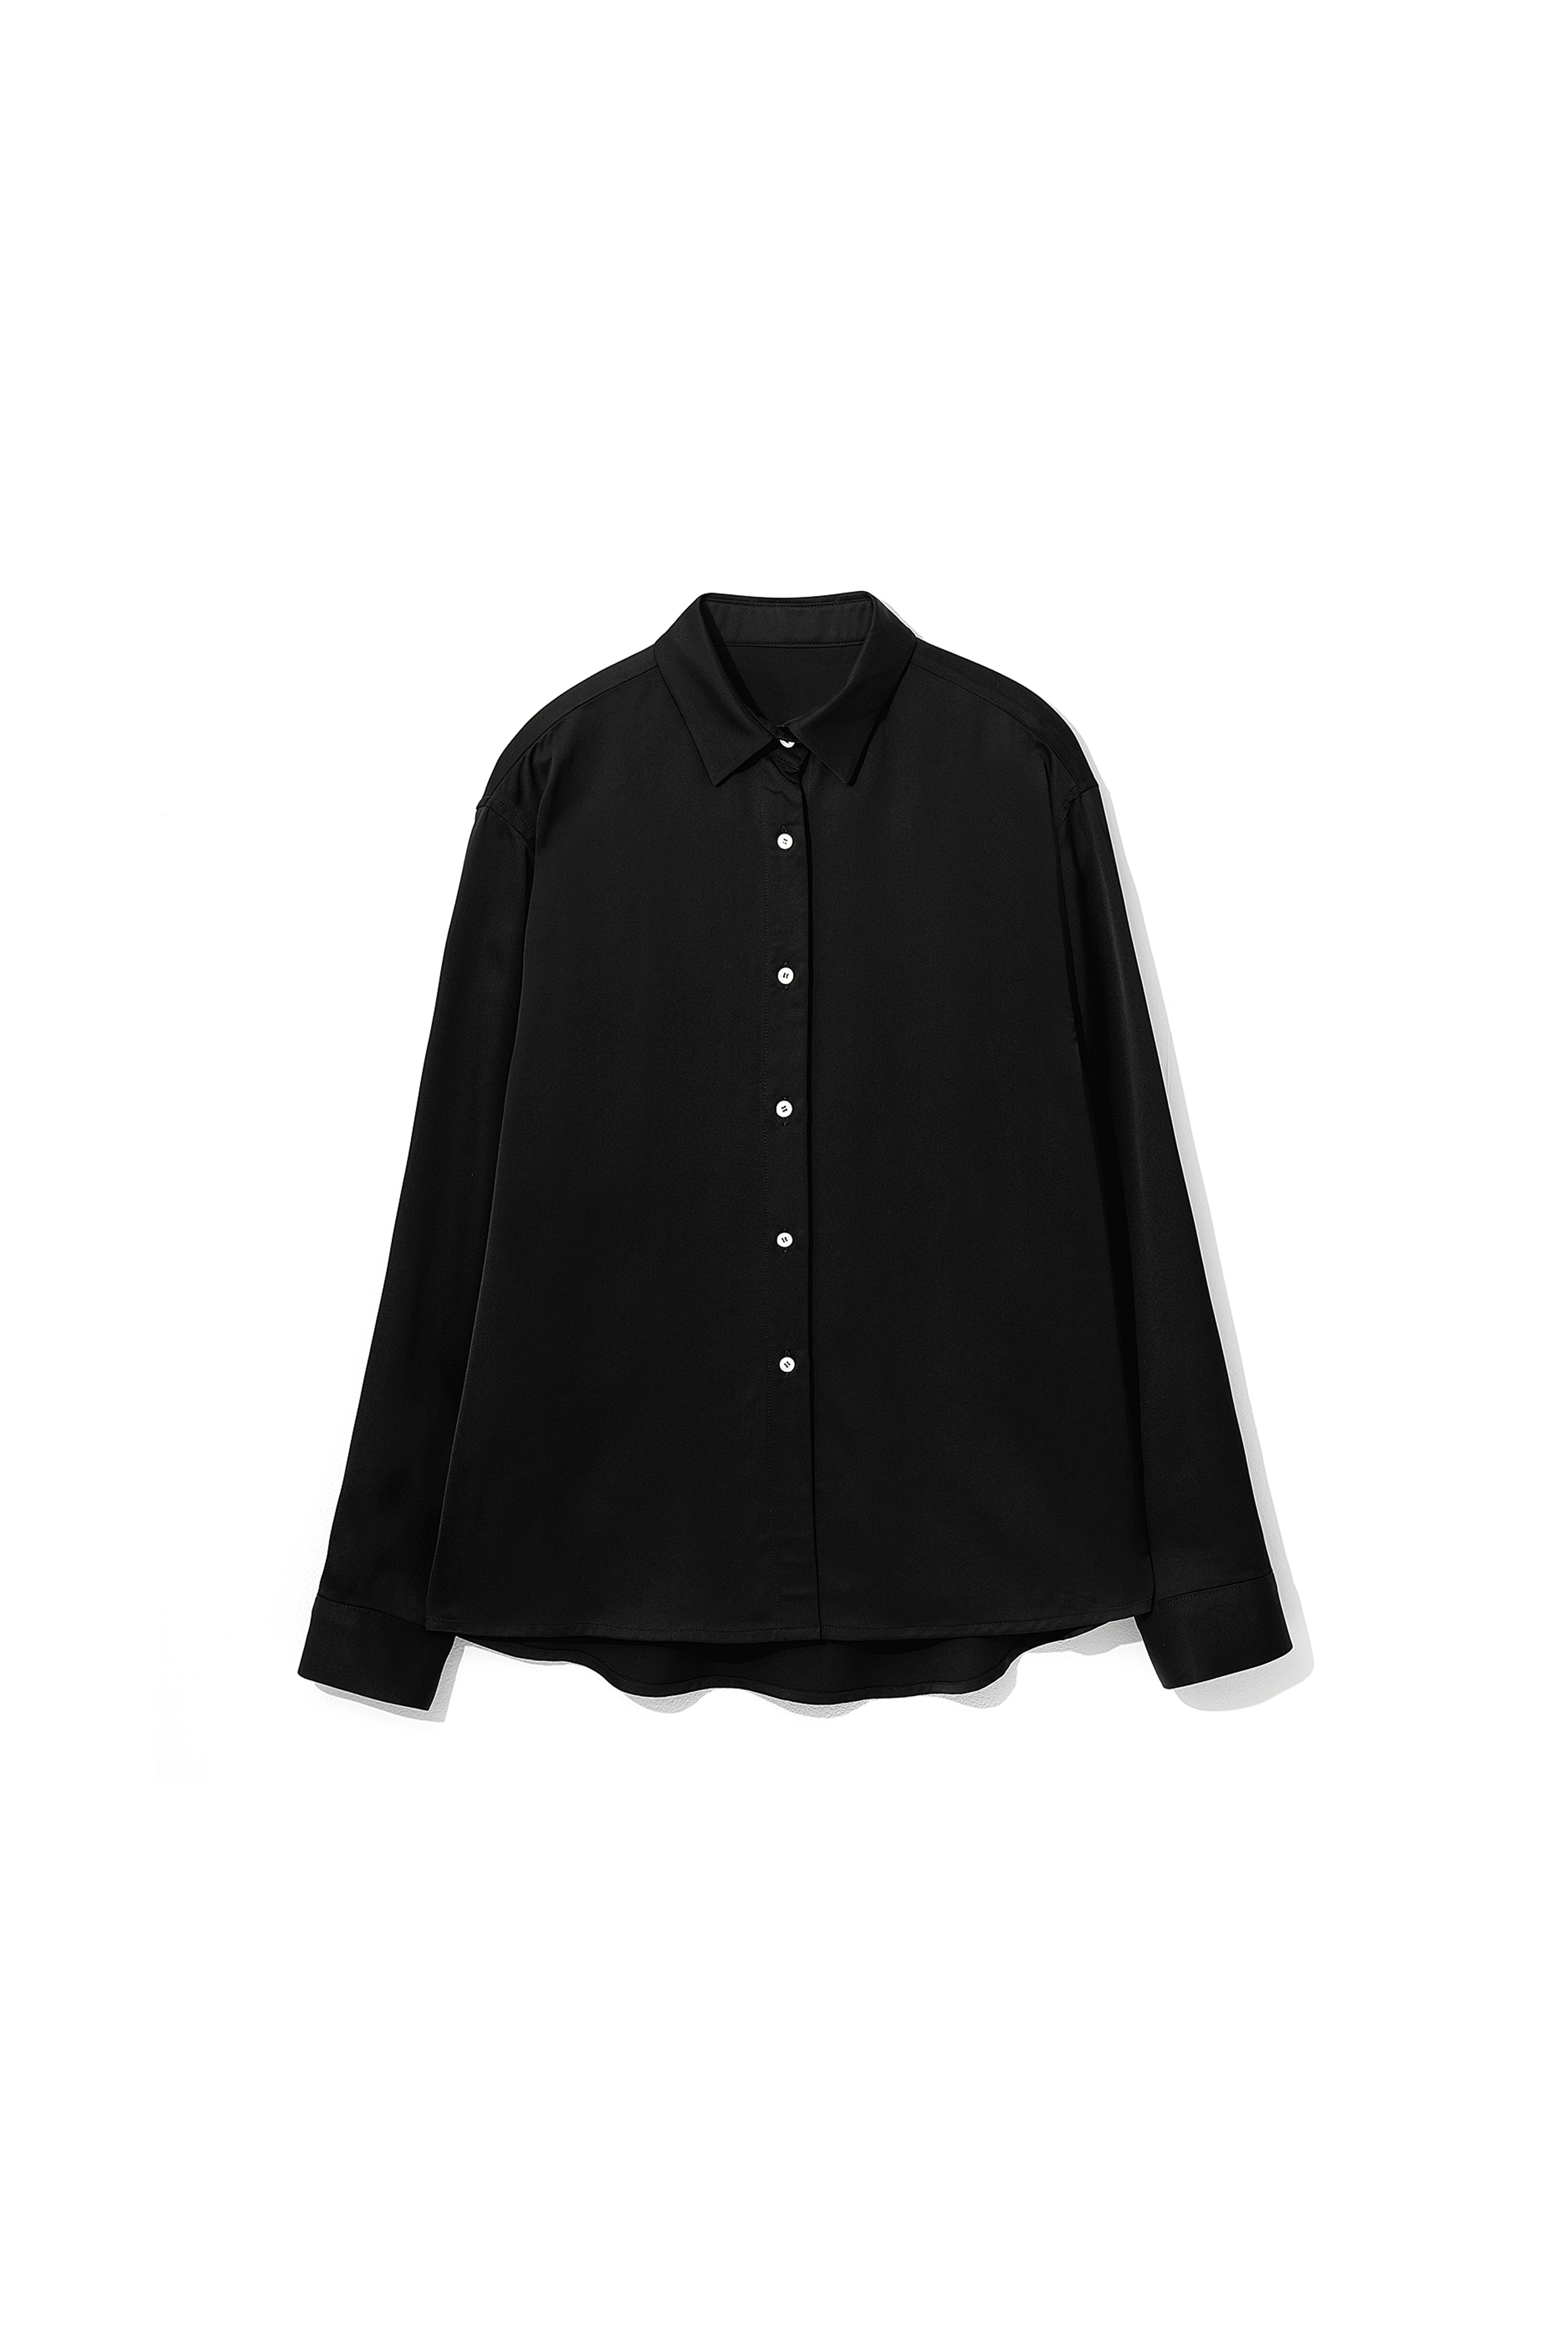 Satin Basic Shirts Black [03.27(MON) 예약 발송]